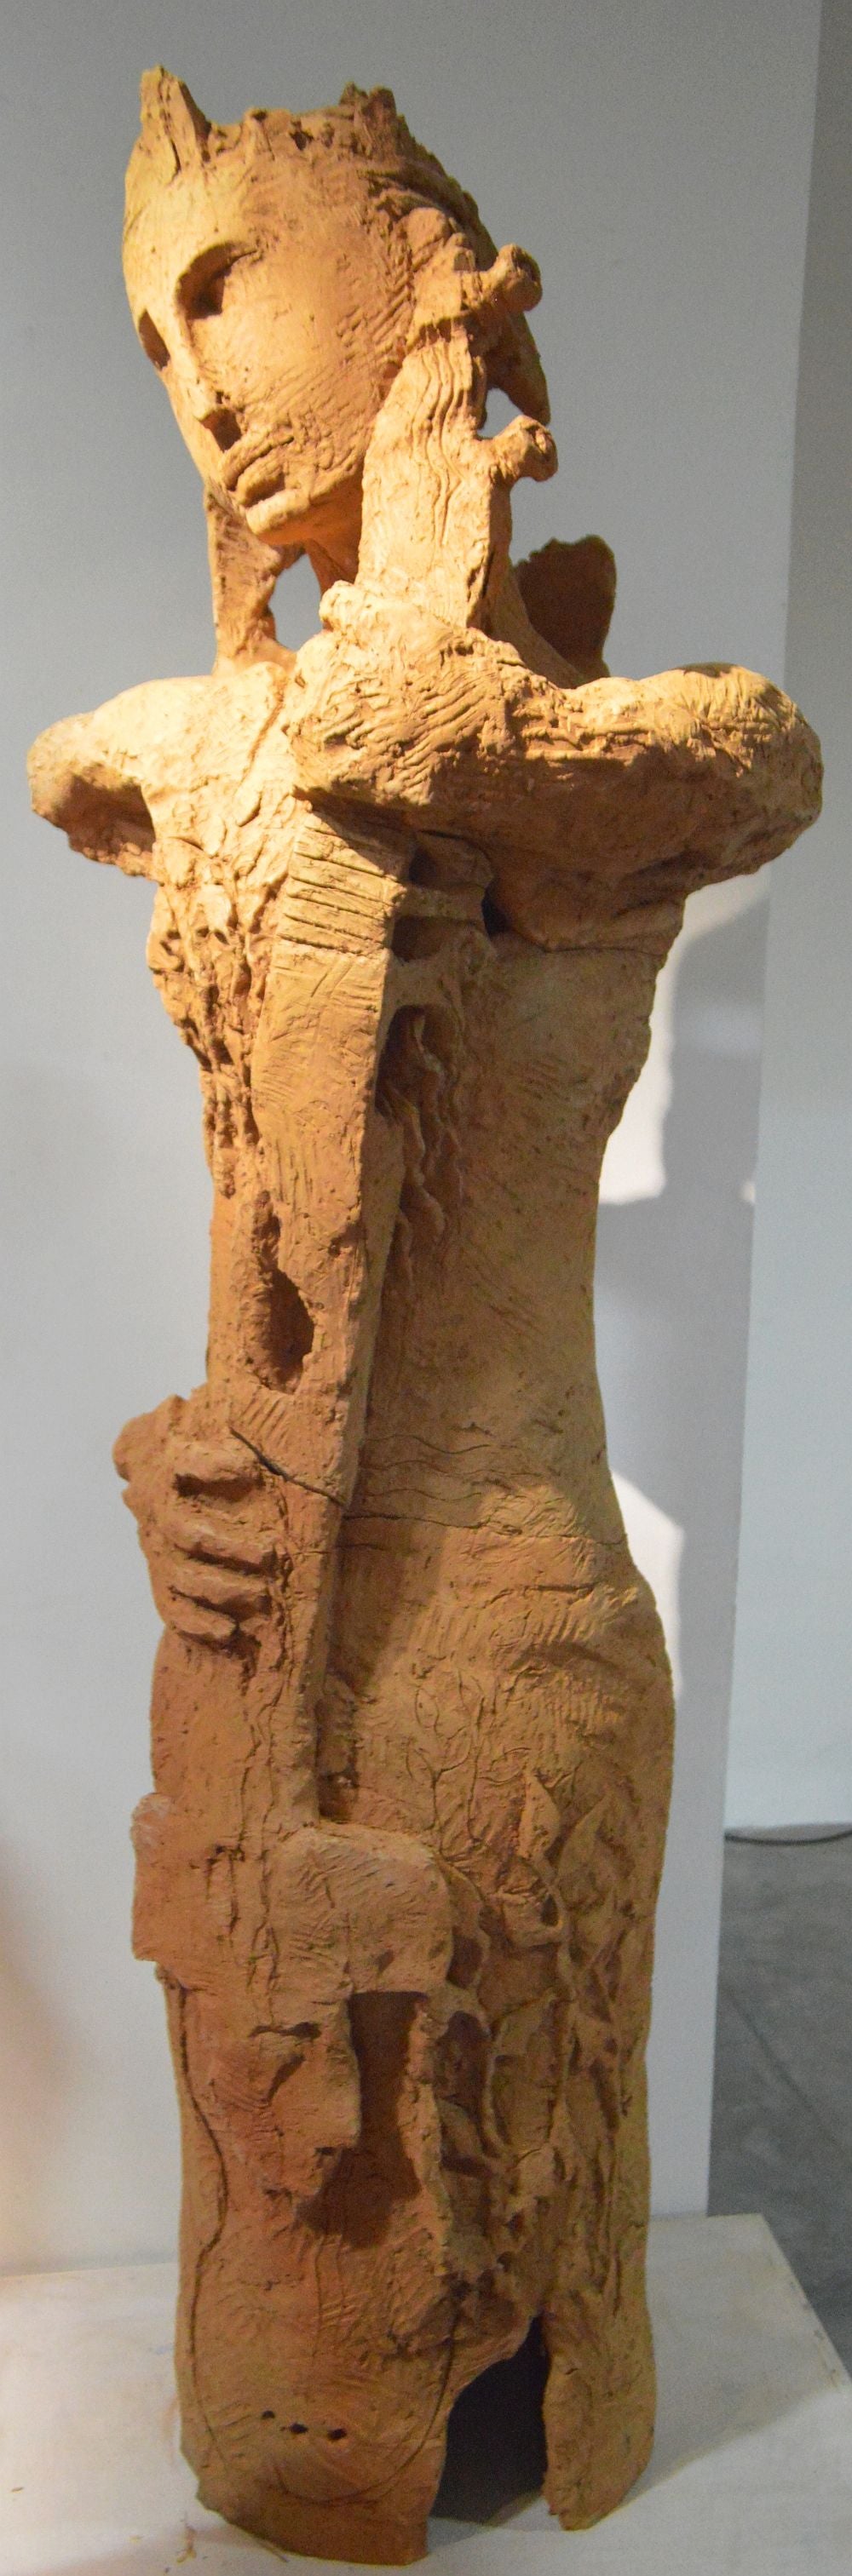 The Musician : Terracotta sculpture by RamKumar Manna